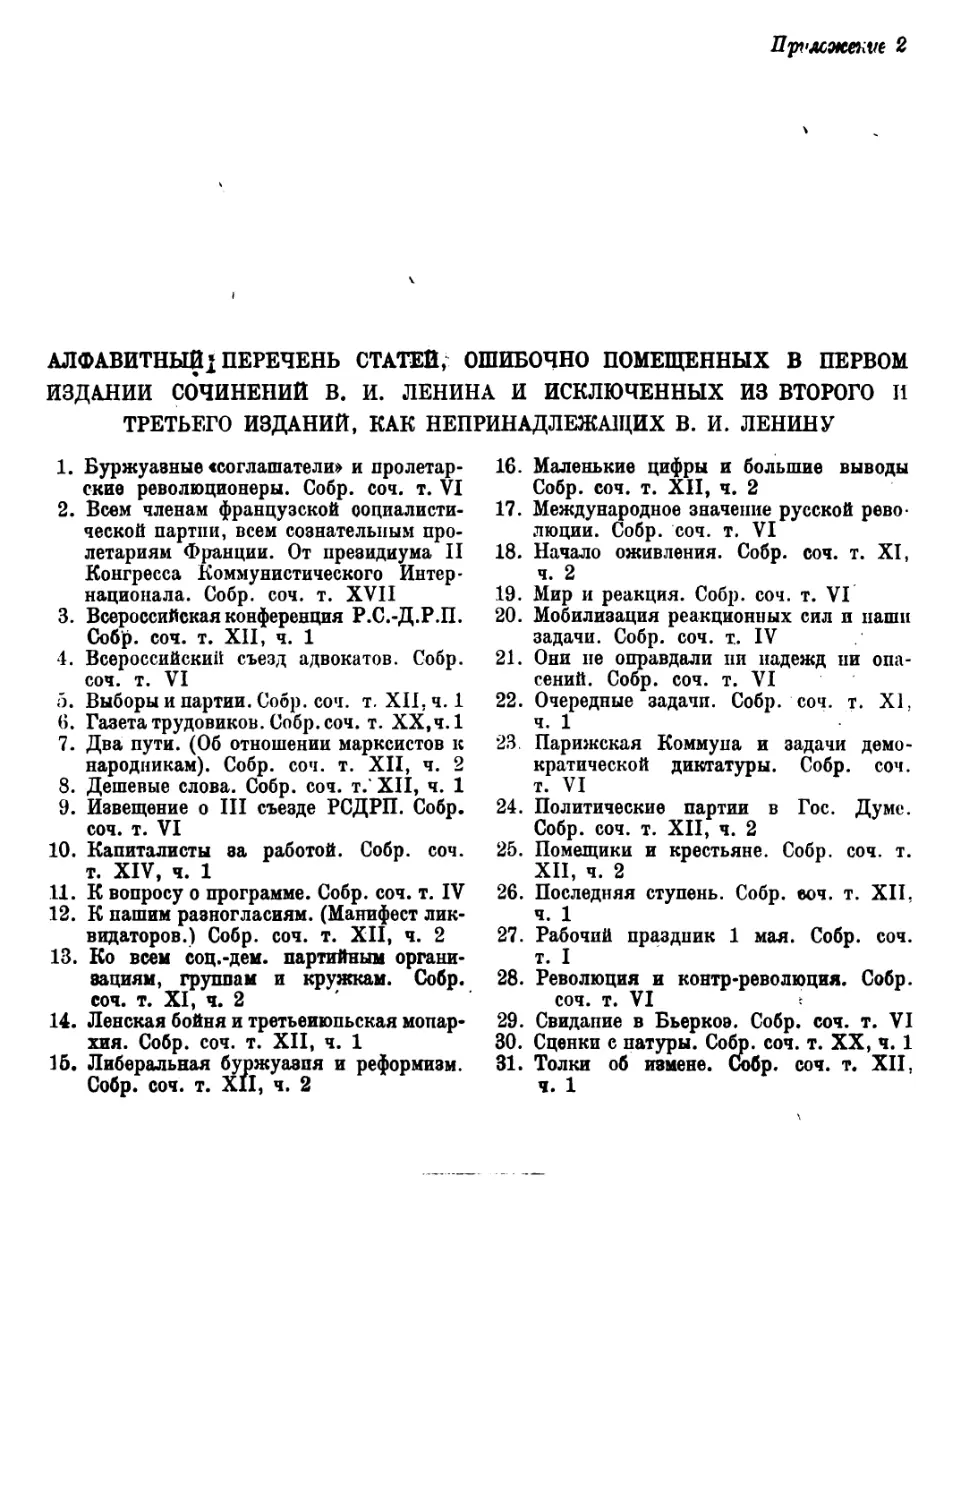 Алфавитный перечень статей, ошибочно помещенных в первом издании Сочинений В. И. Ленина и исключенных из второго и третьего изданий, как непринадлежащих В. И. Ленину.